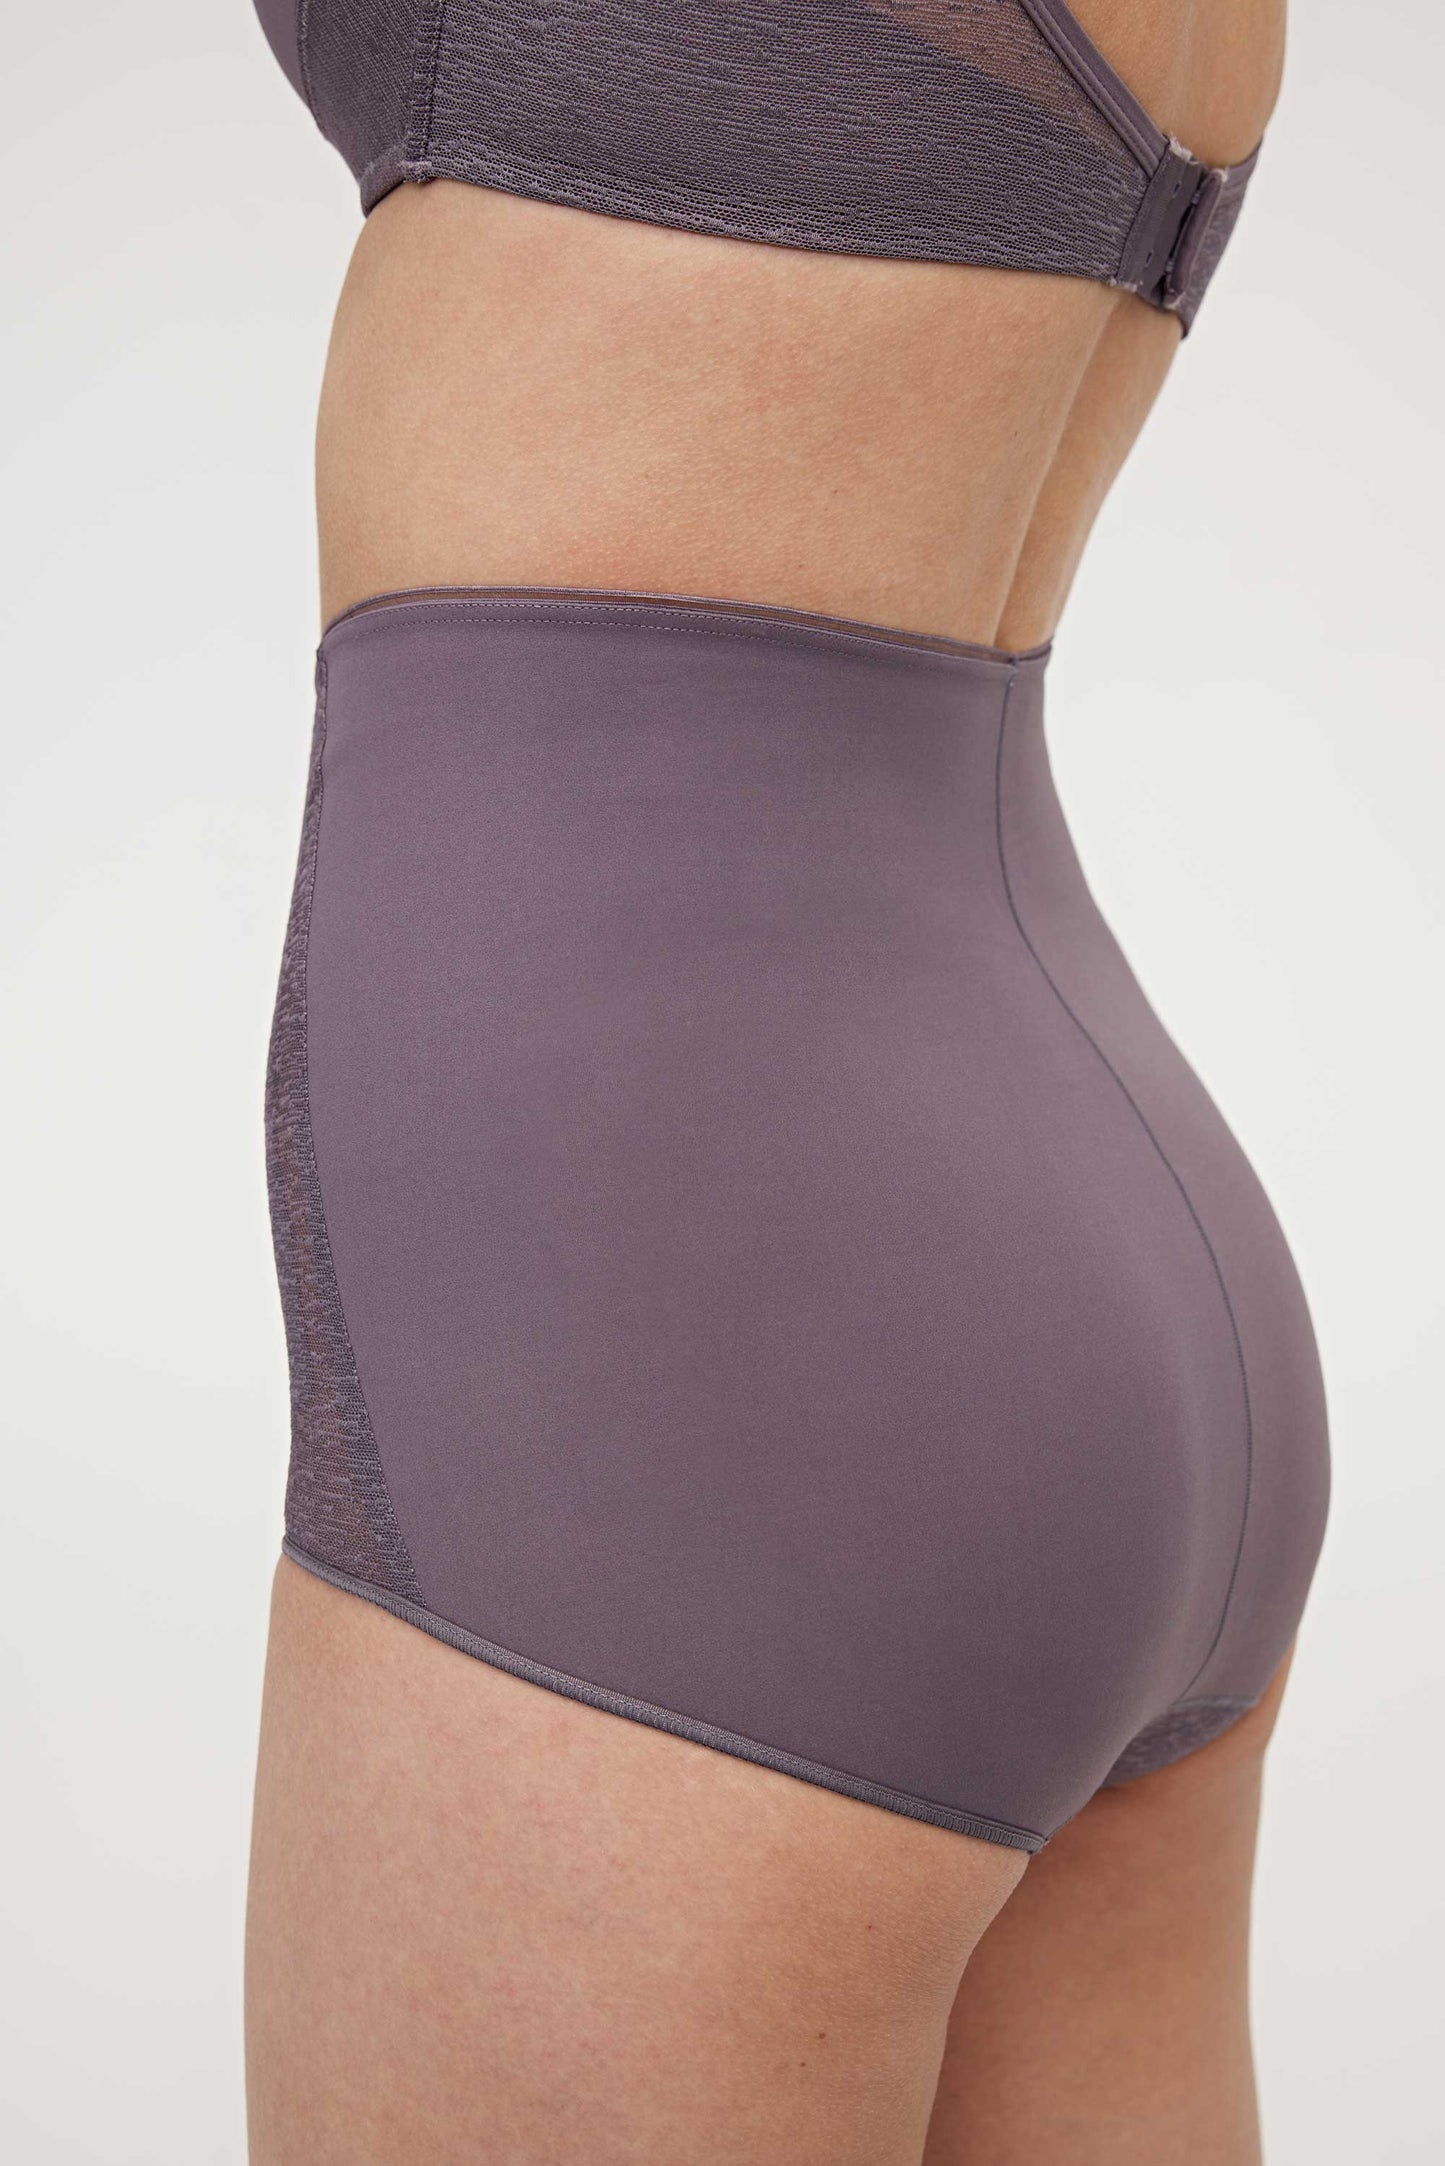 woman in purple high waist brief